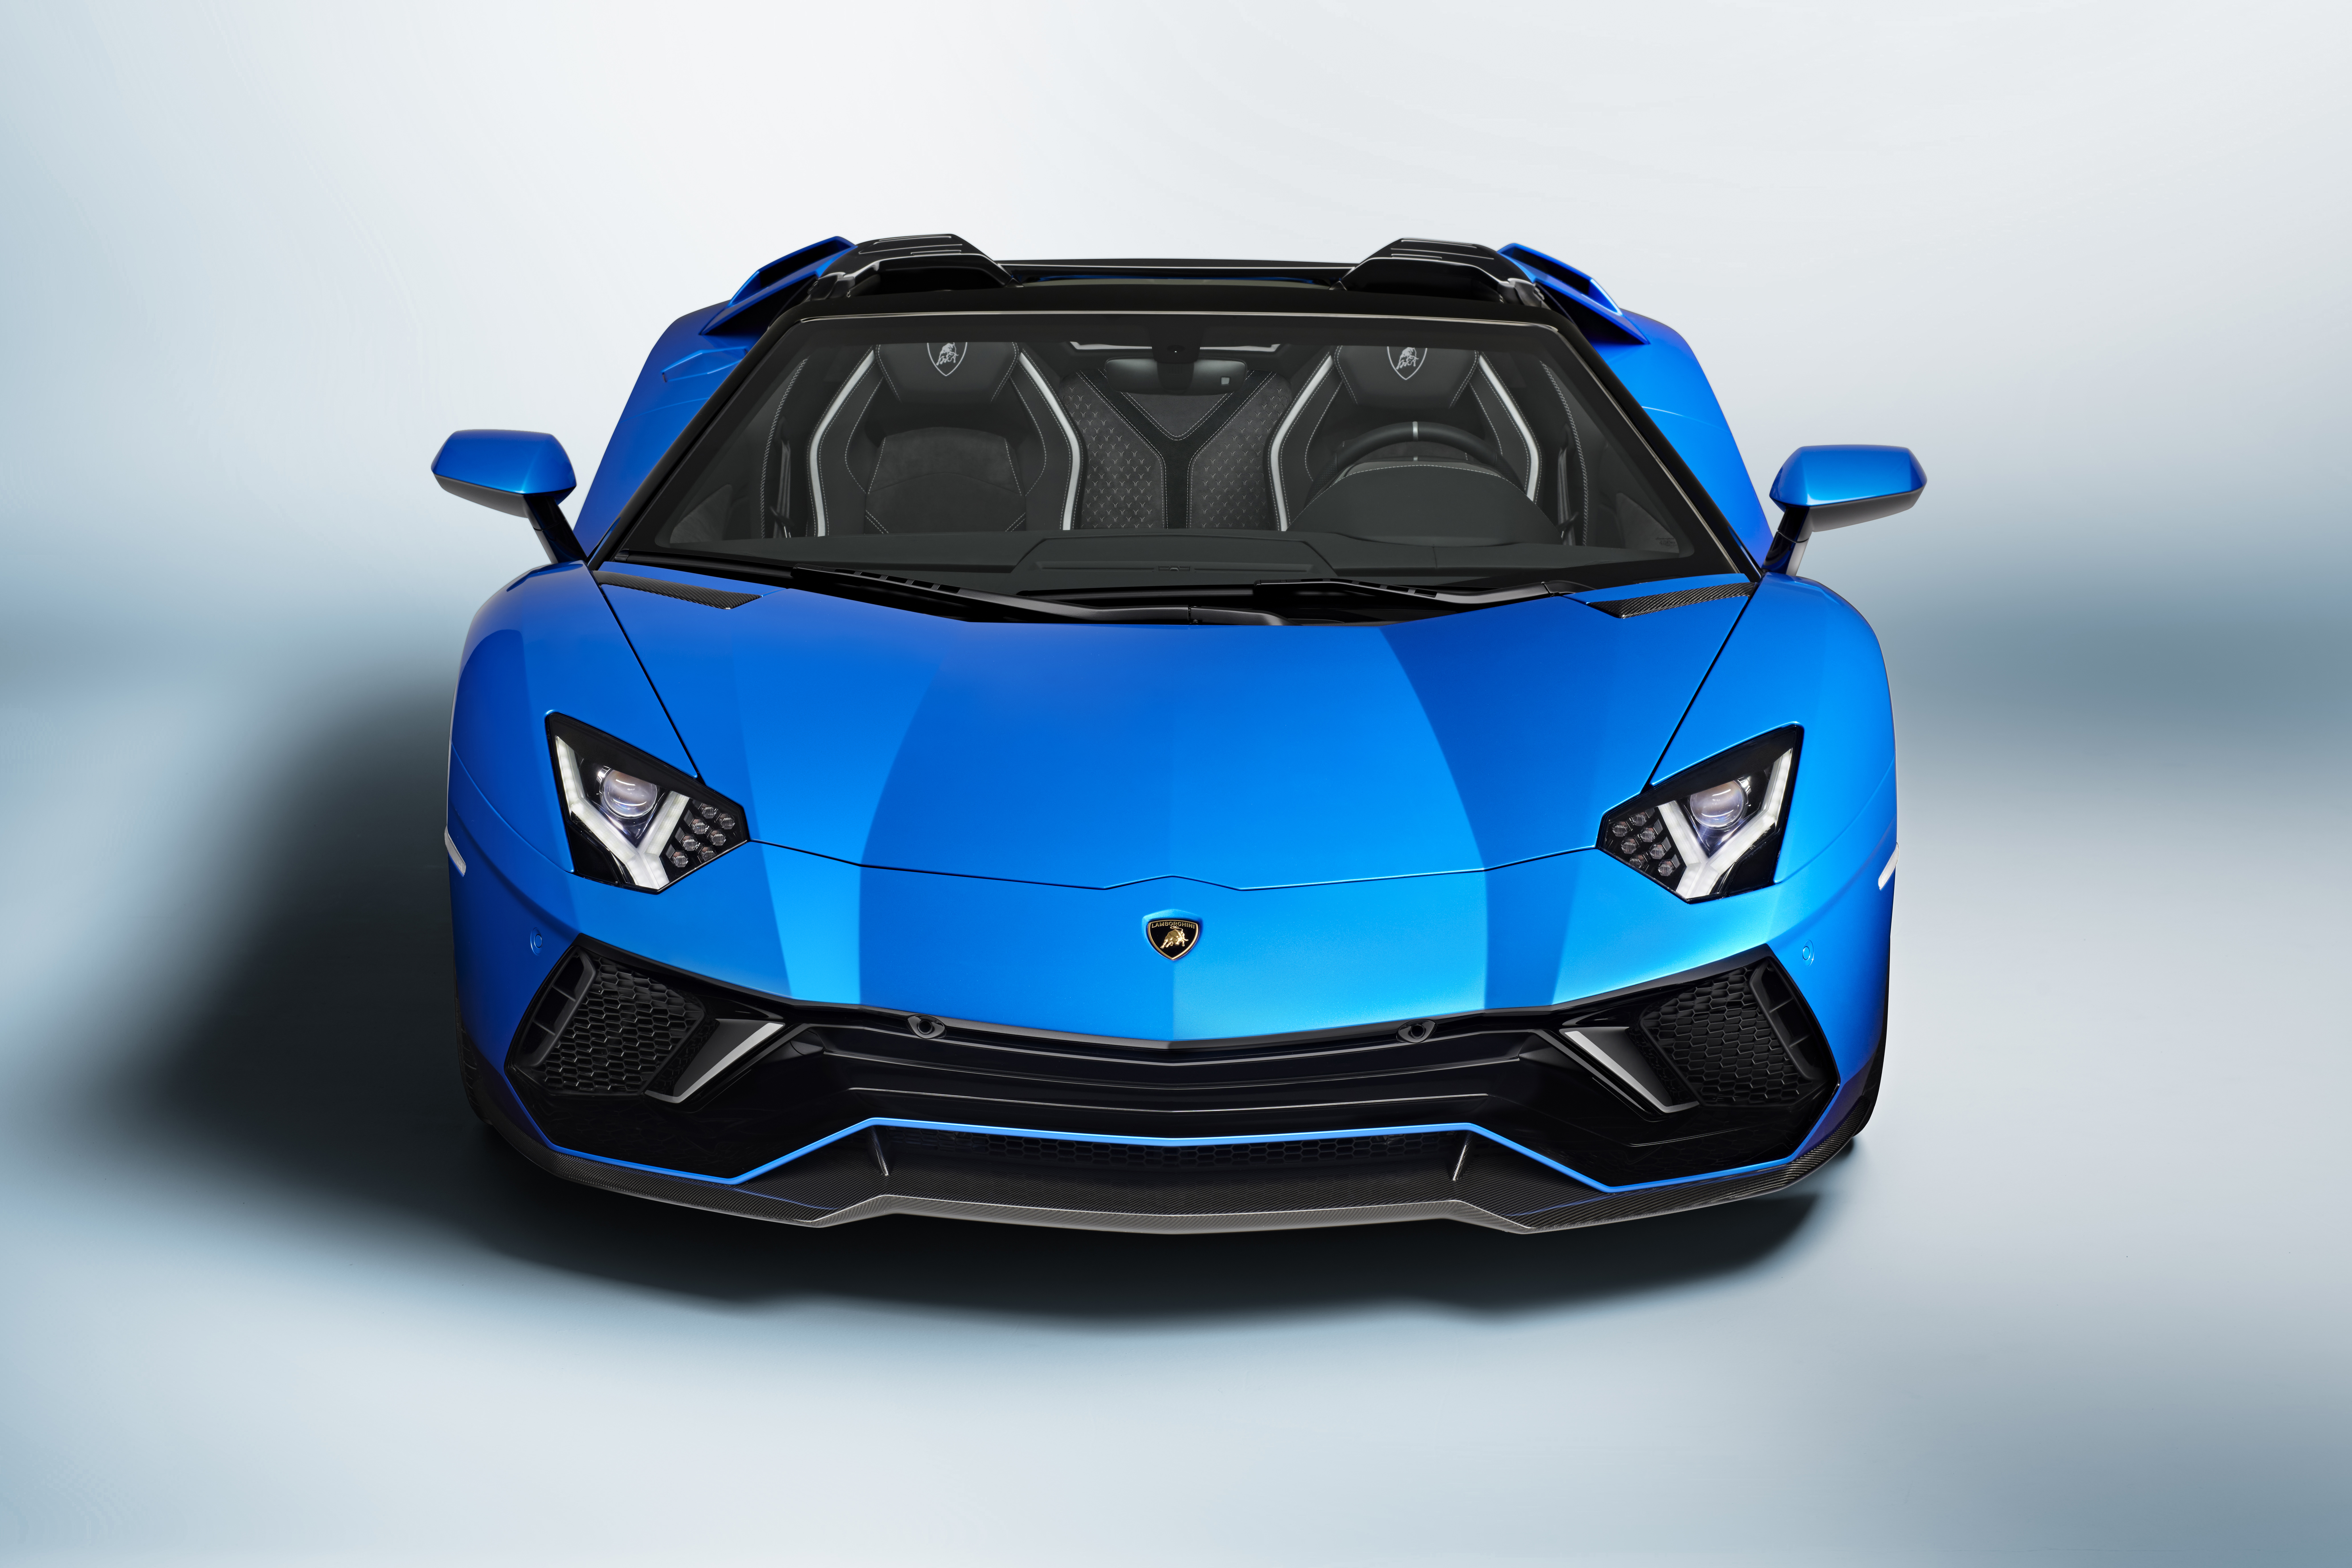 Download mobile wallpaper Lamborghini, Supercar, Lamborghini Aventador, Vehicles, Lamborghini Aventador Lp 780 4 Ultimae for free.